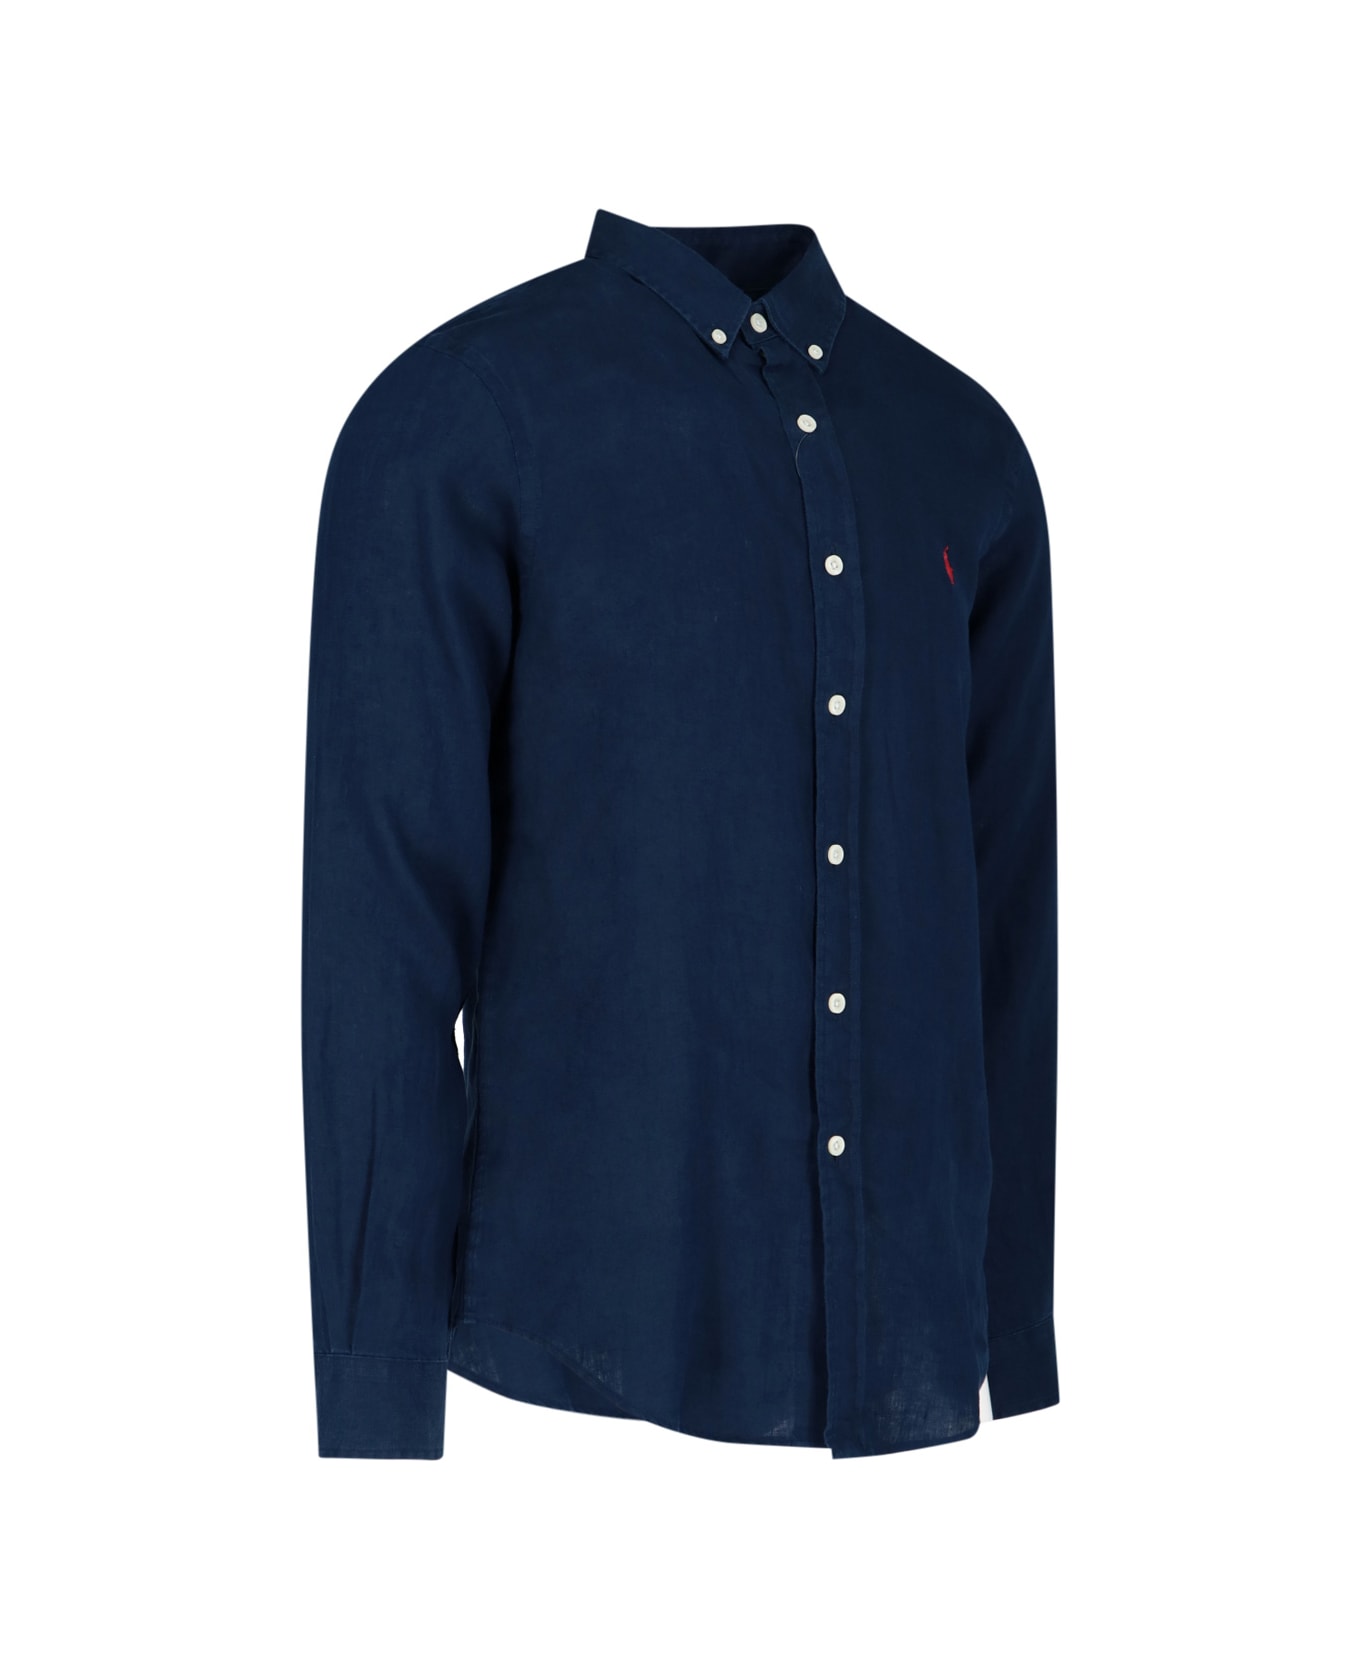 Ralph Lauren Shirt - Newport Navy